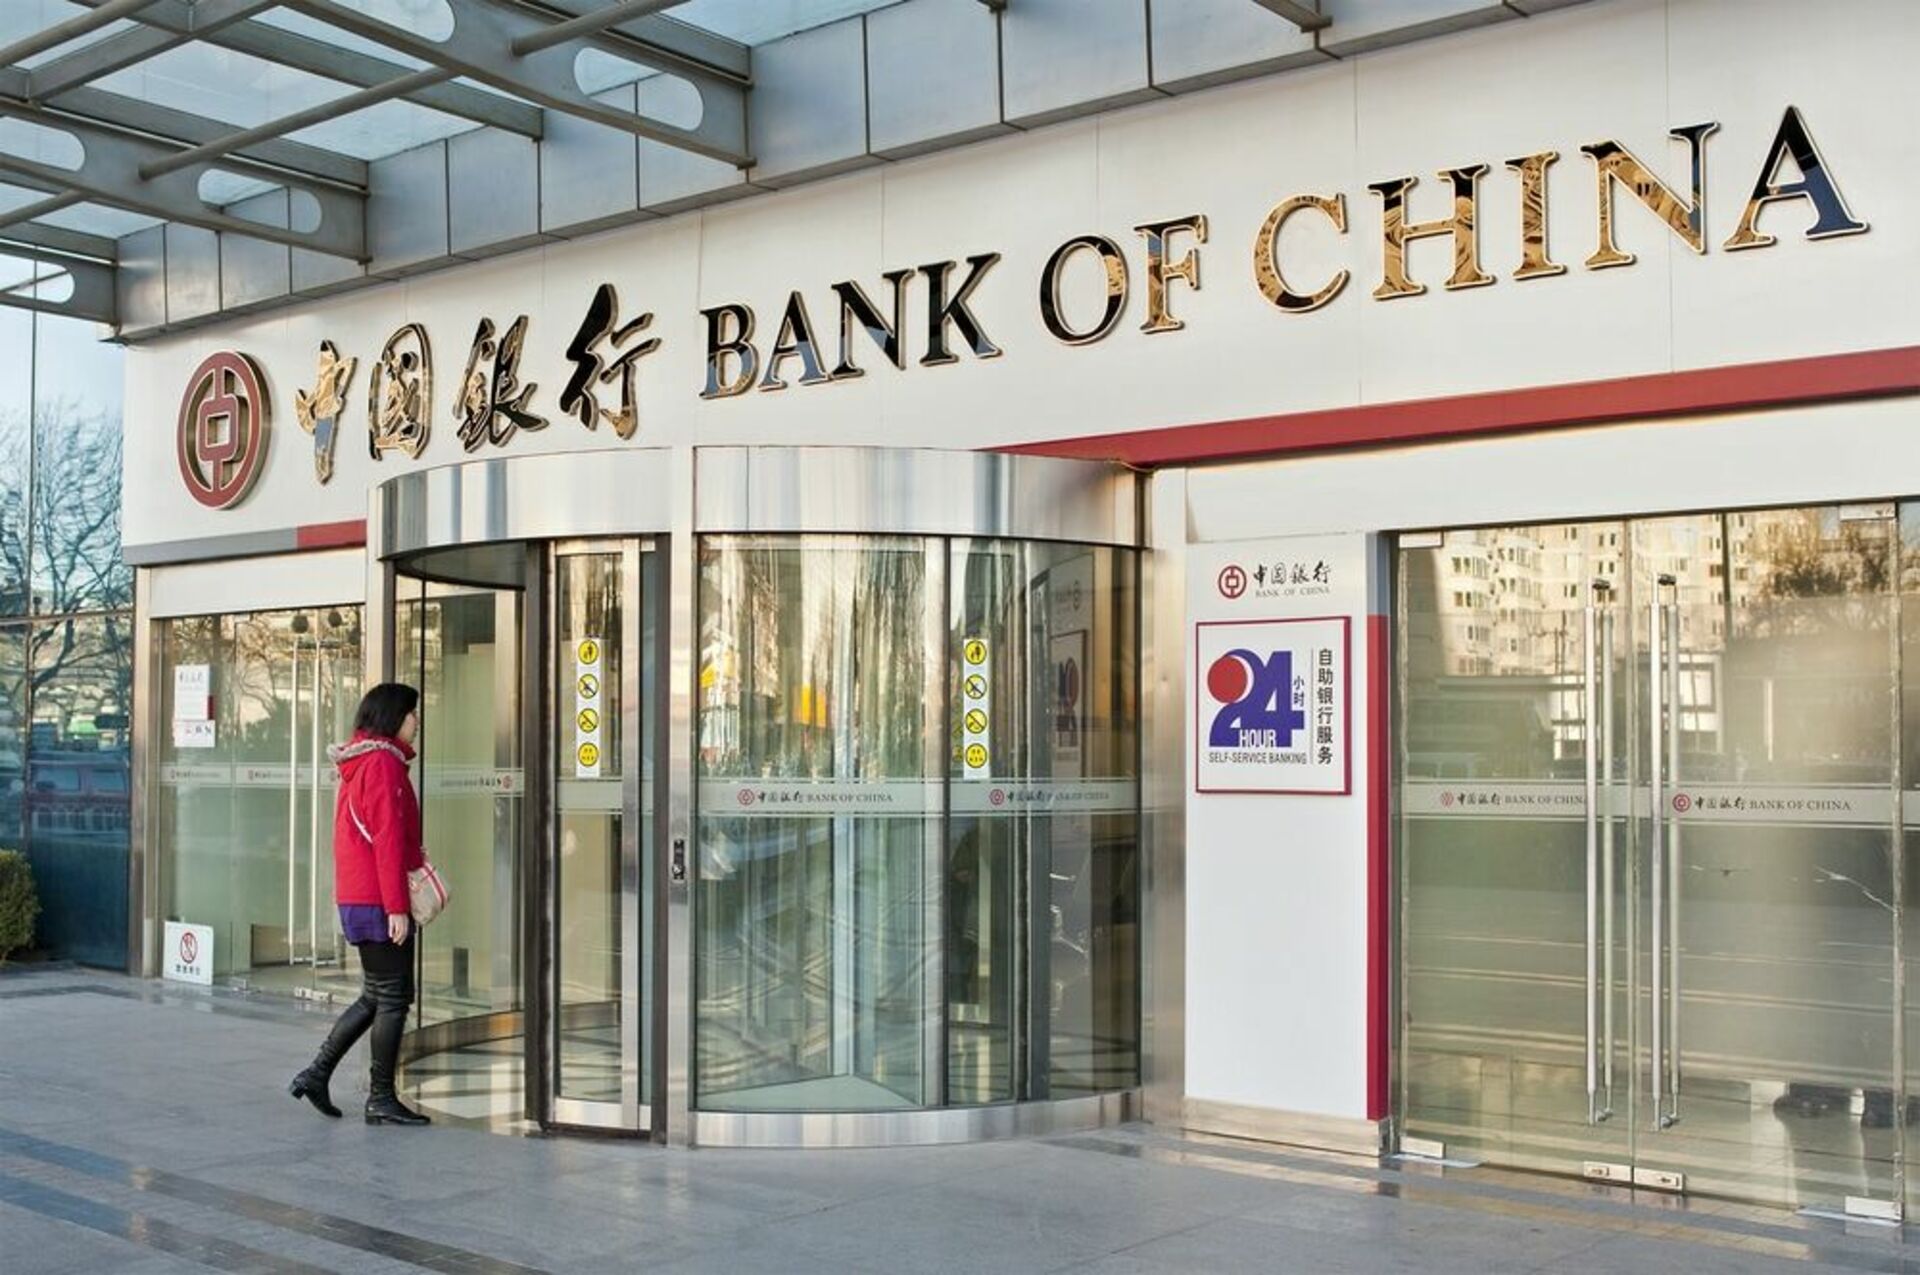 Bank of china китай. Банк Китая. Банк Bank of China. Банк Китая (boc). Bank of China в России.